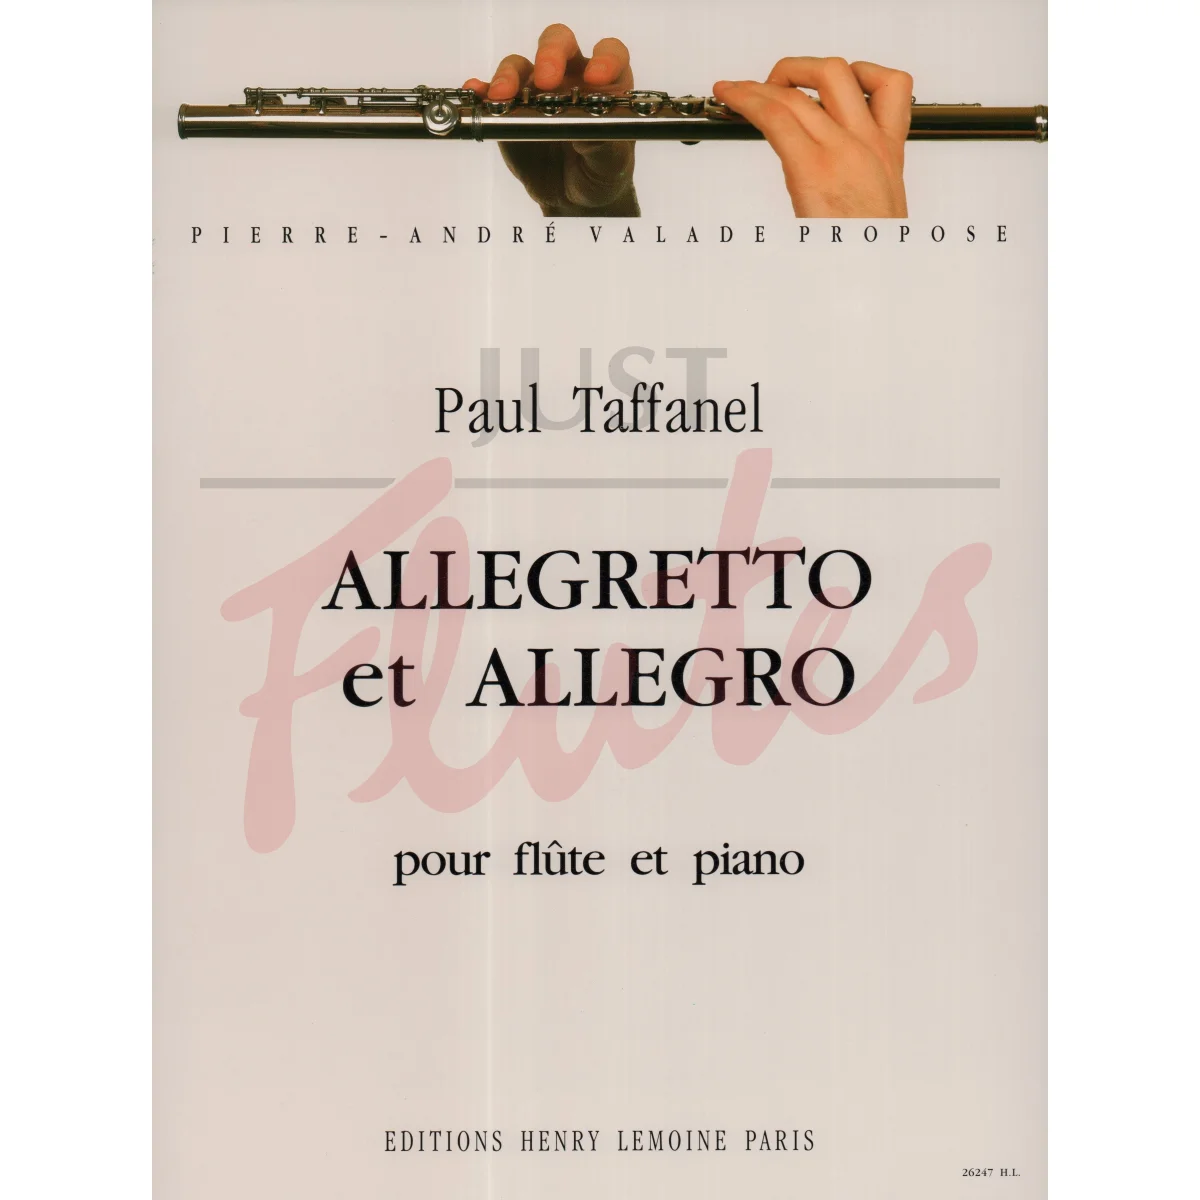 Allegretto et Allegro for Flute and Piano